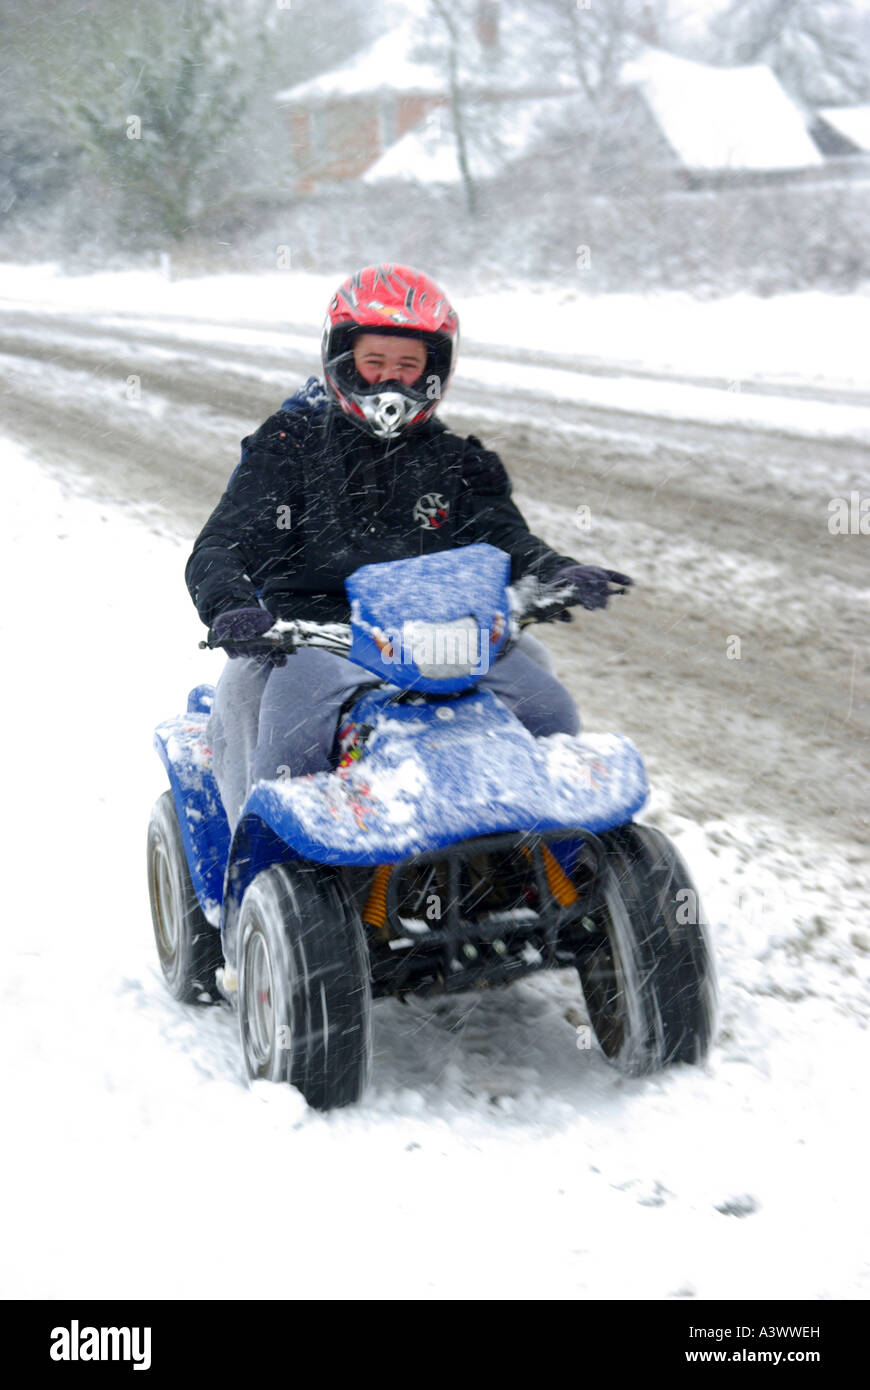 Schneefall in den jungen Menschen in roten Sturzhelm fahren quad bike schnell entlang verschneite Dorf Pflaster unklar, ob männlich oder weiblich Essex England Großbritannien Stockfoto